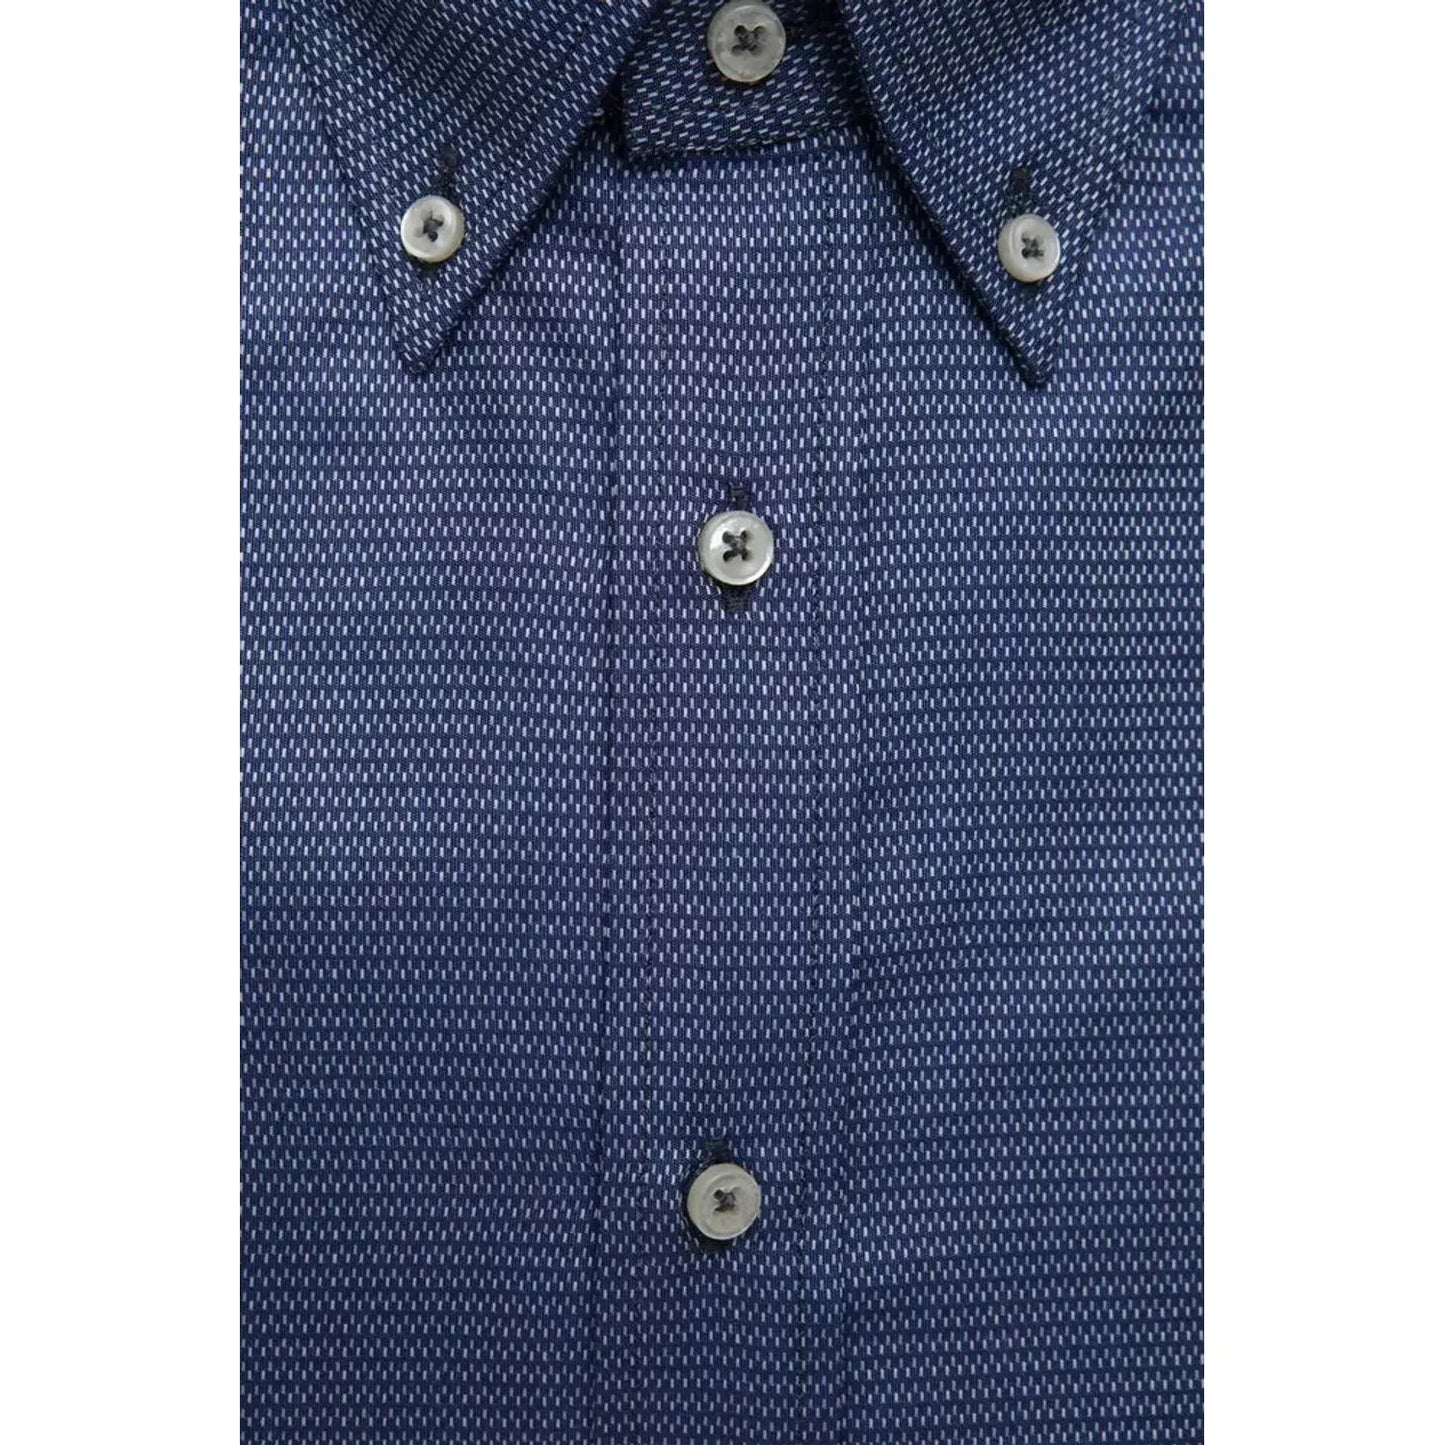 Robert Friedman Elegant Blue Cotton Button Down Shirt blue-cotton-shirt-17